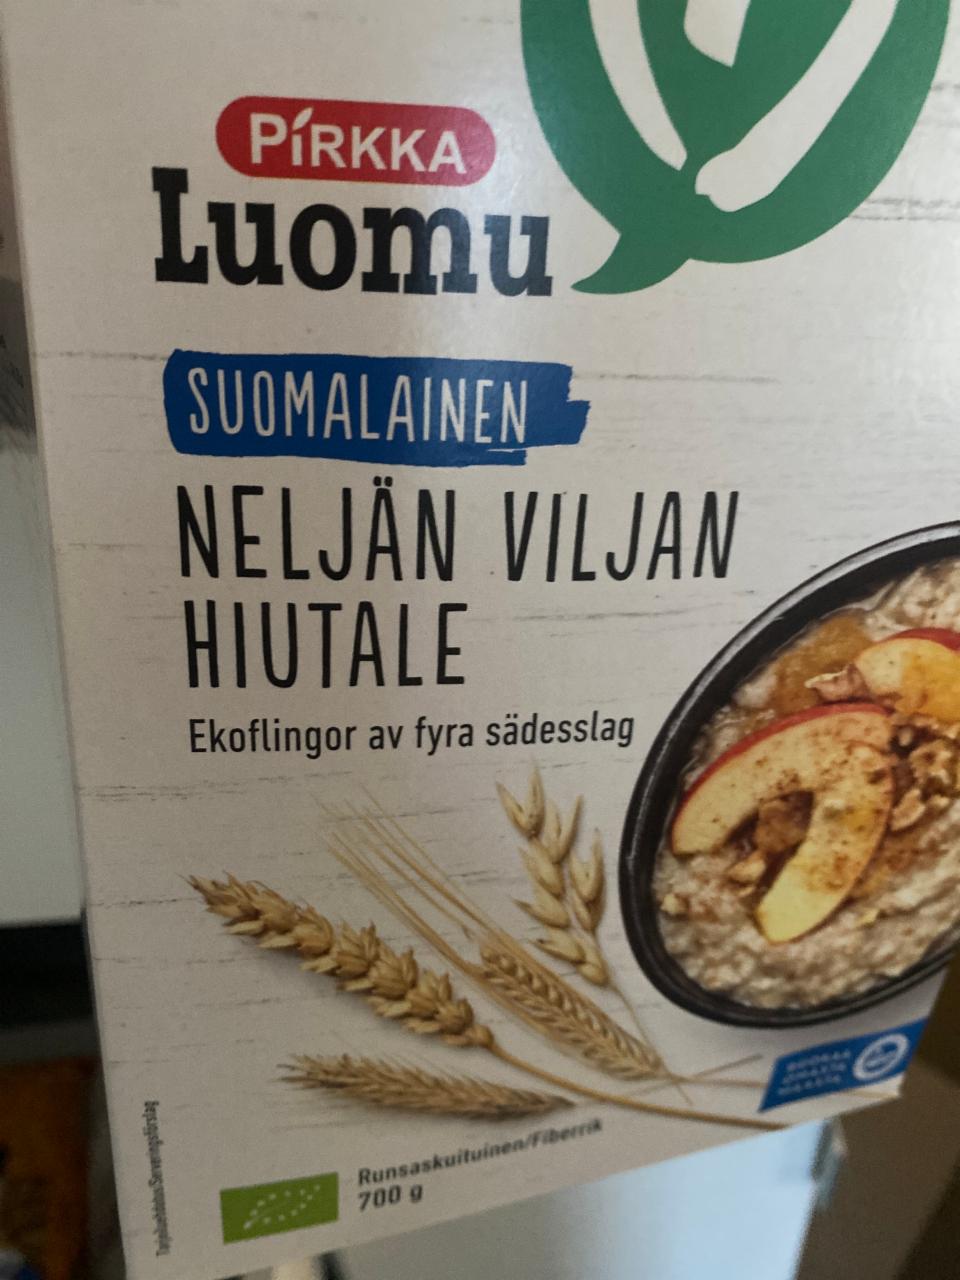 Fotografie - Luomu suomalainen neljän viljan hiutale Pirkka